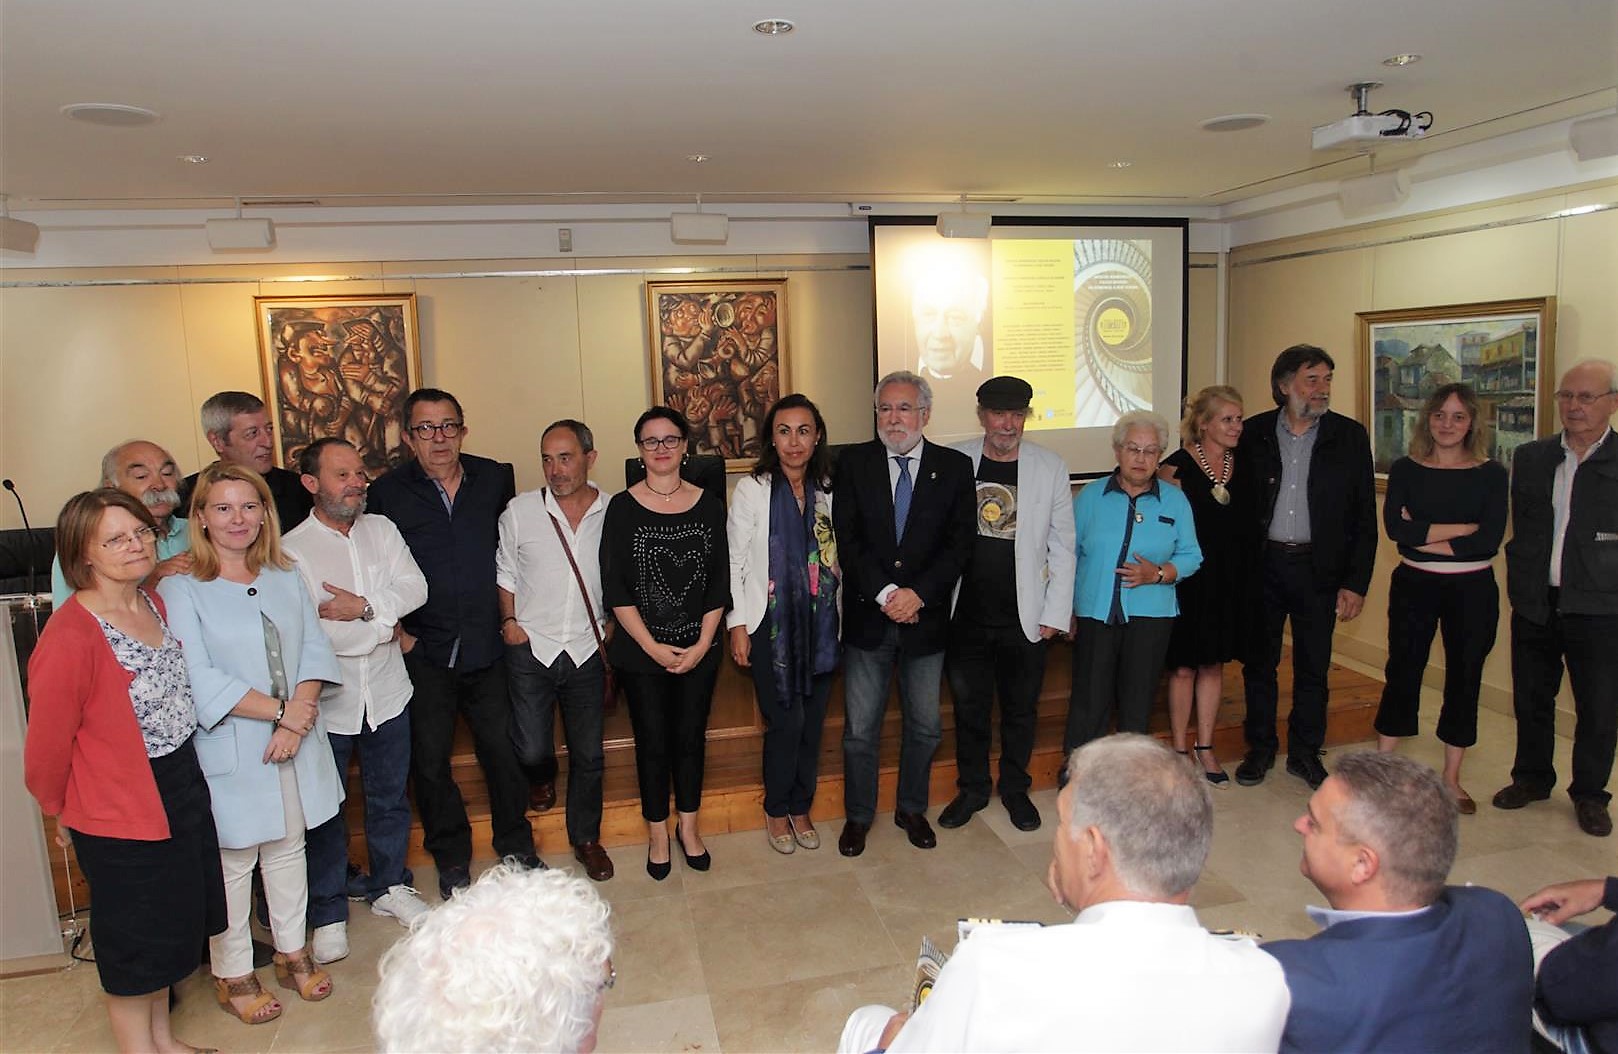 Foto da noticia:Santalices felicita aos promotores da mostra de artistas Galicia-Baviera porque “mellora o coñecemento entre os pobos e afianza a nosa vocación e o compromiso europeísta”